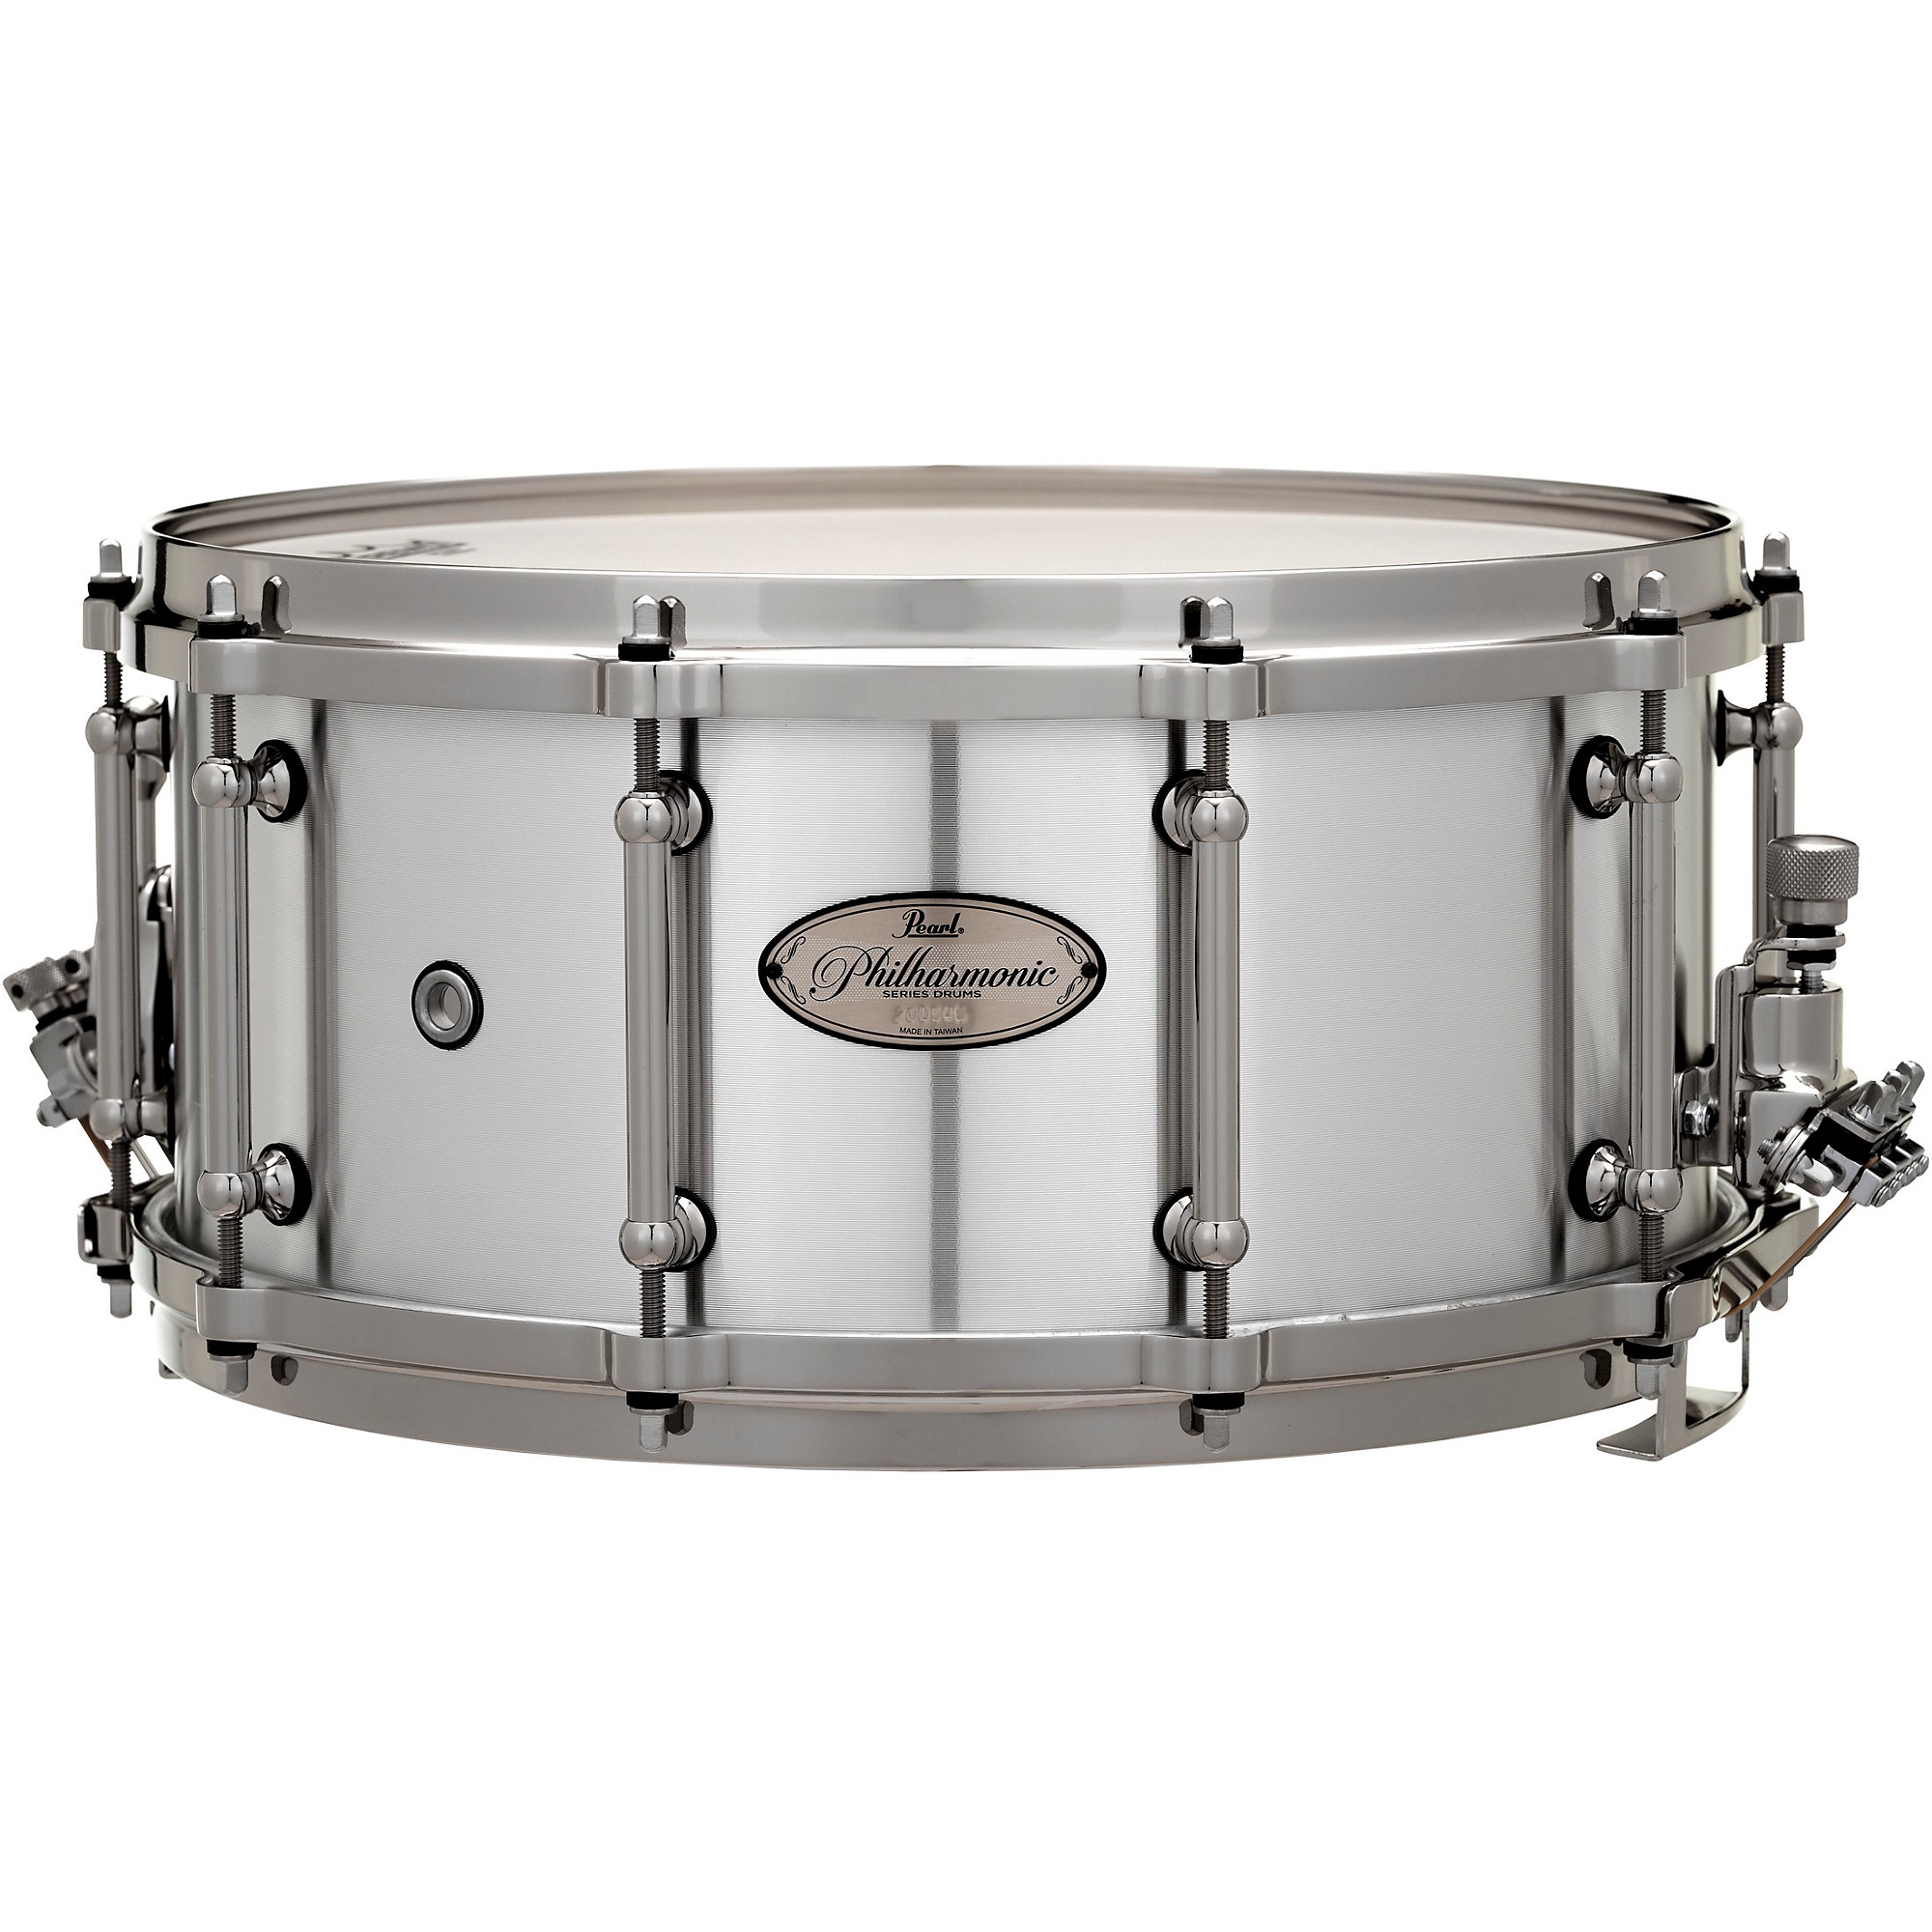 Philharmonic Cast Aluminum  Pearl Drums -Official site